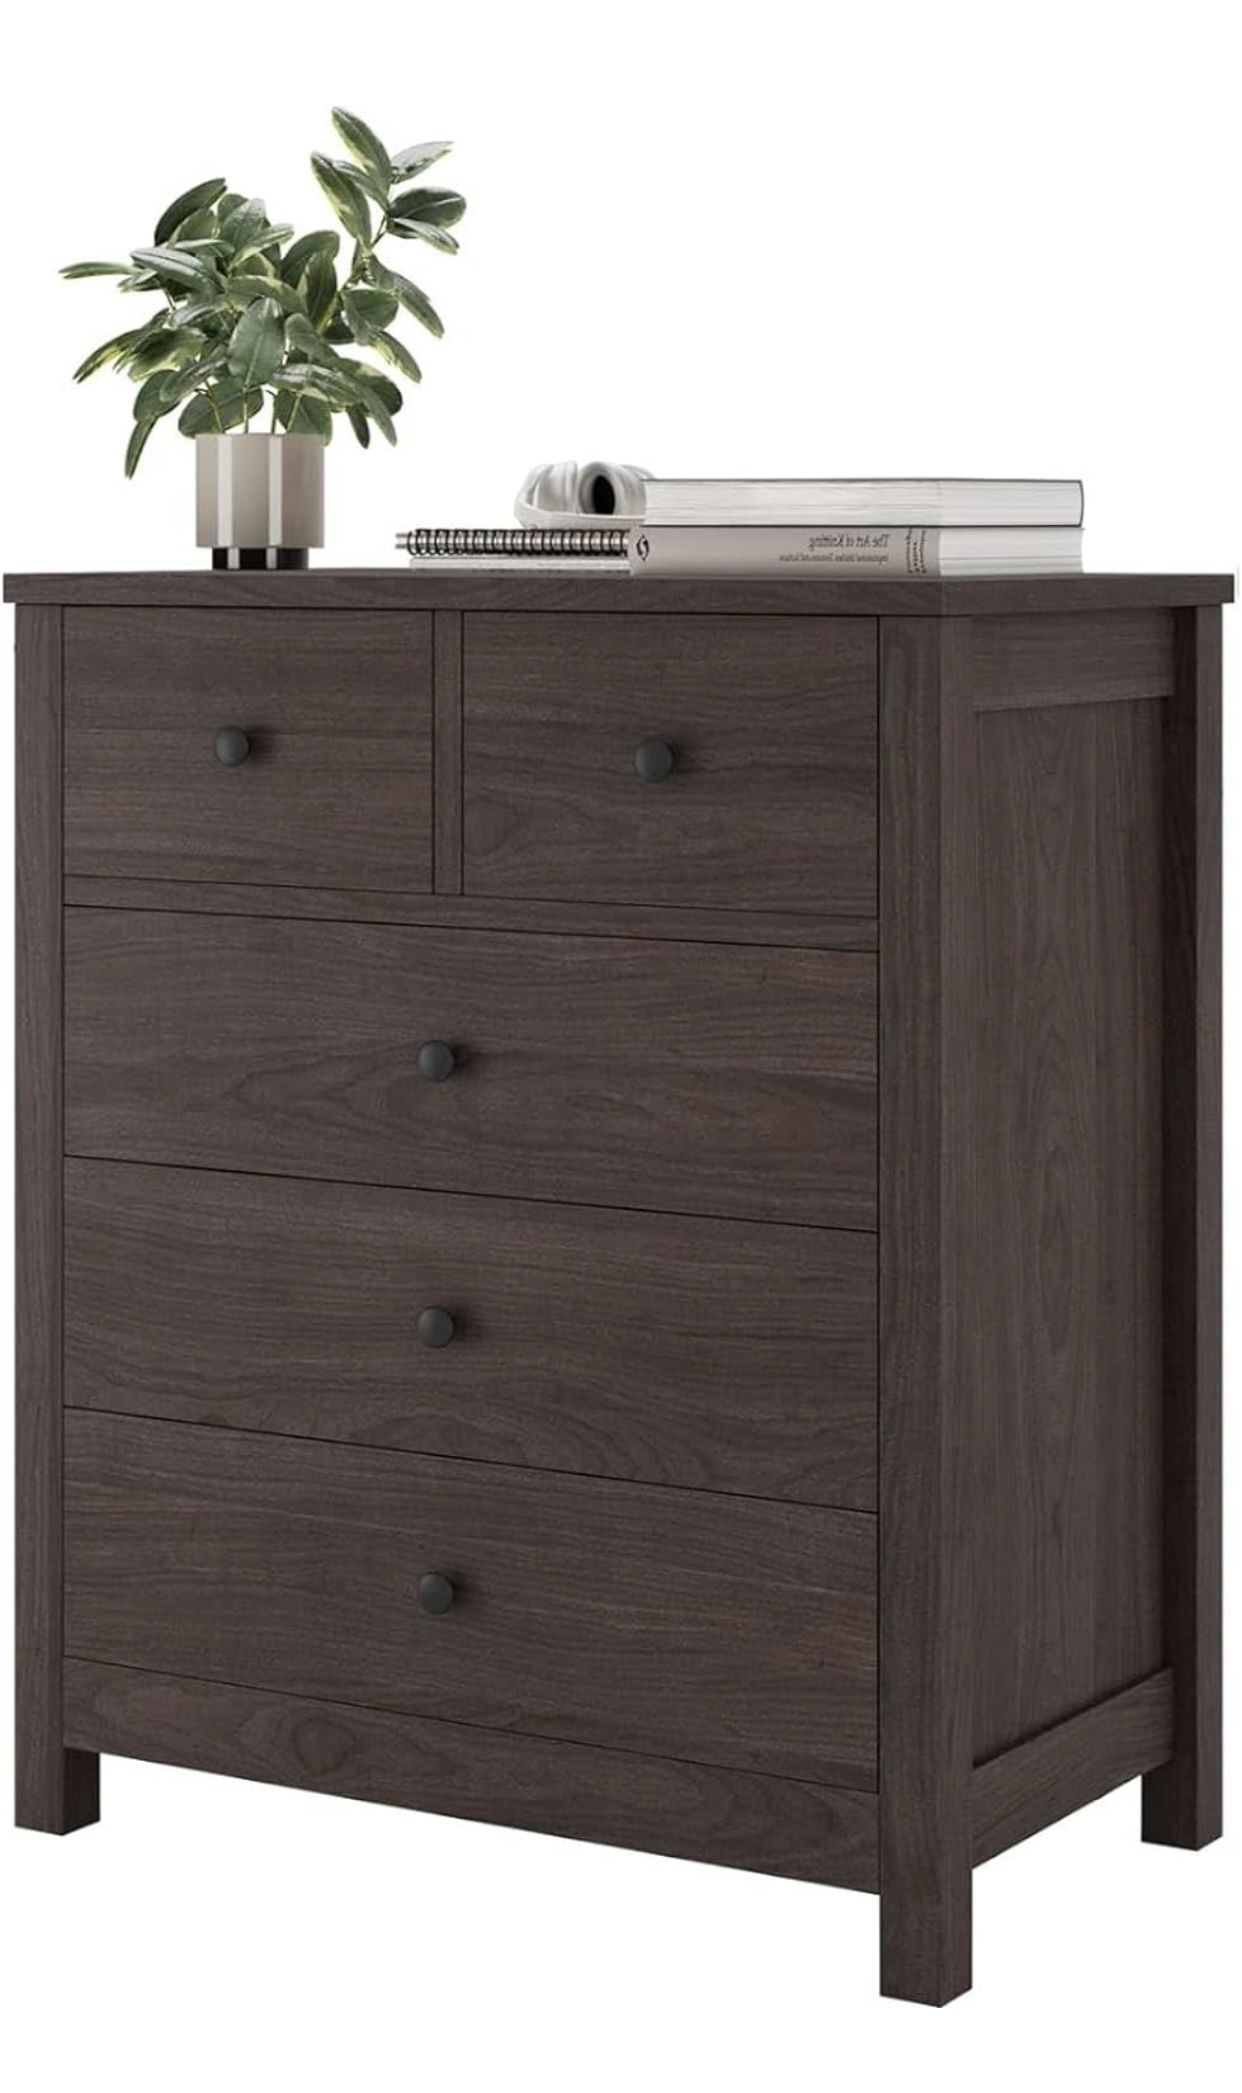 Senfot 5 Drawer Wood Dresser - Dark Brown